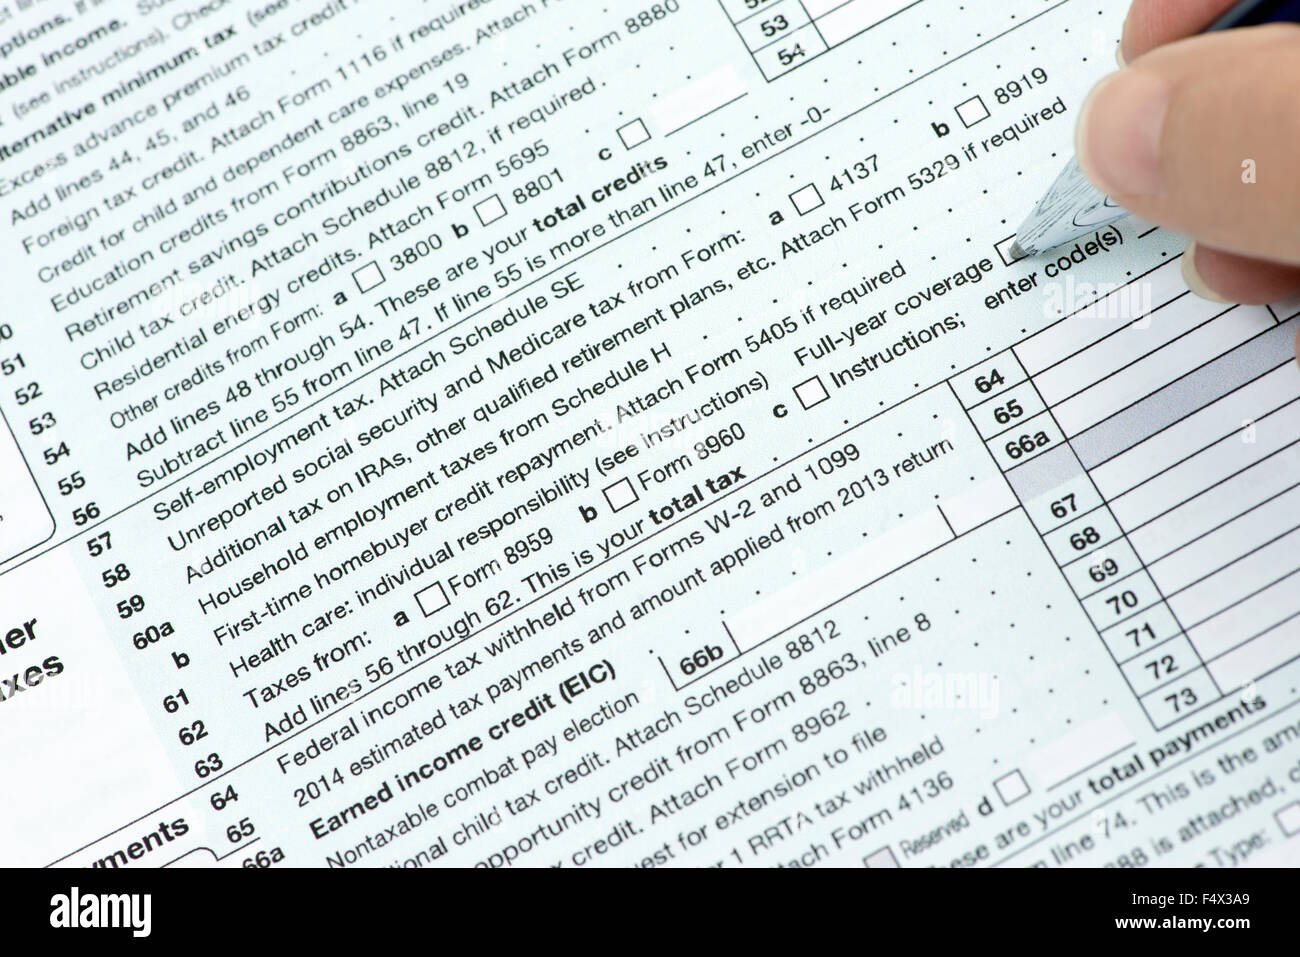 Sobre nosotros la línea 61 de la forma 1040 del impuesto sobre la renta con una persona revisando su cobertura médica de verificación. Foto de stock